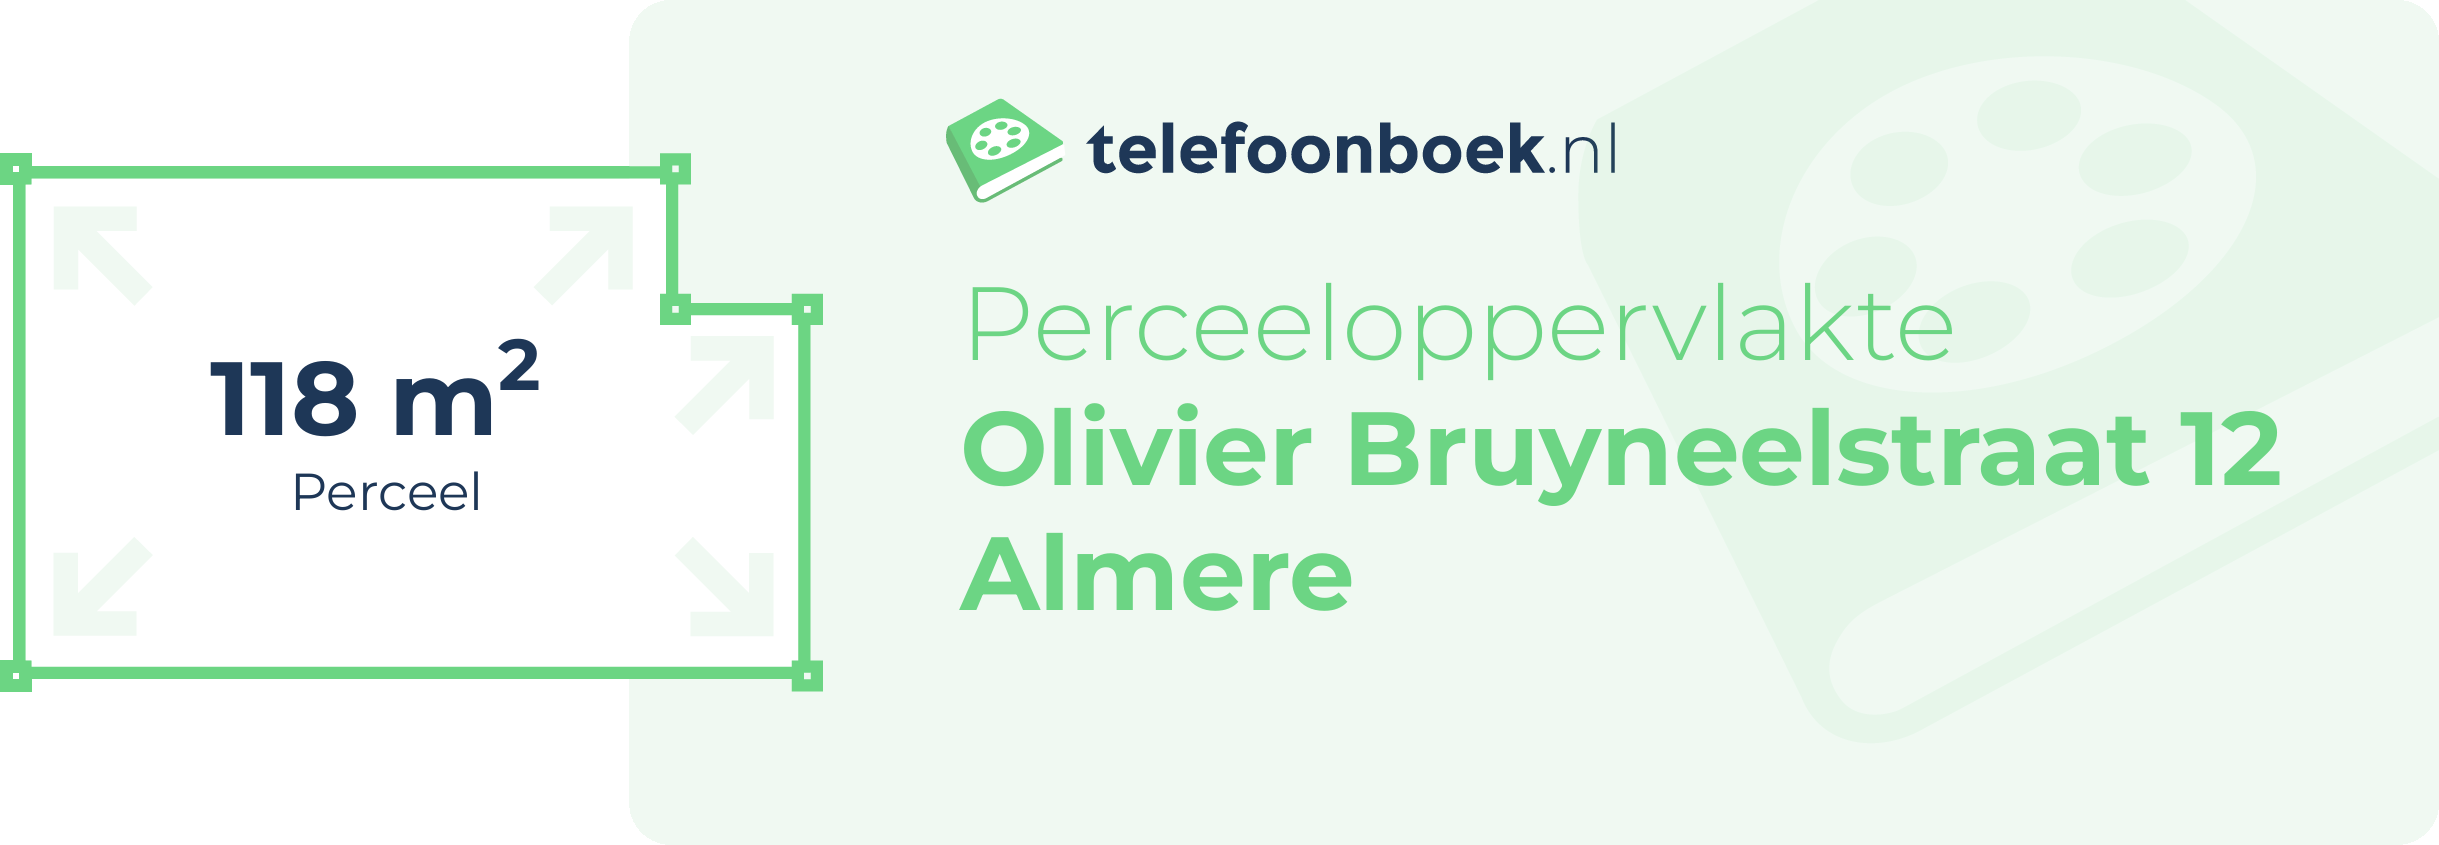 Perceeloppervlakte Olivier Bruyneelstraat 12 Almere